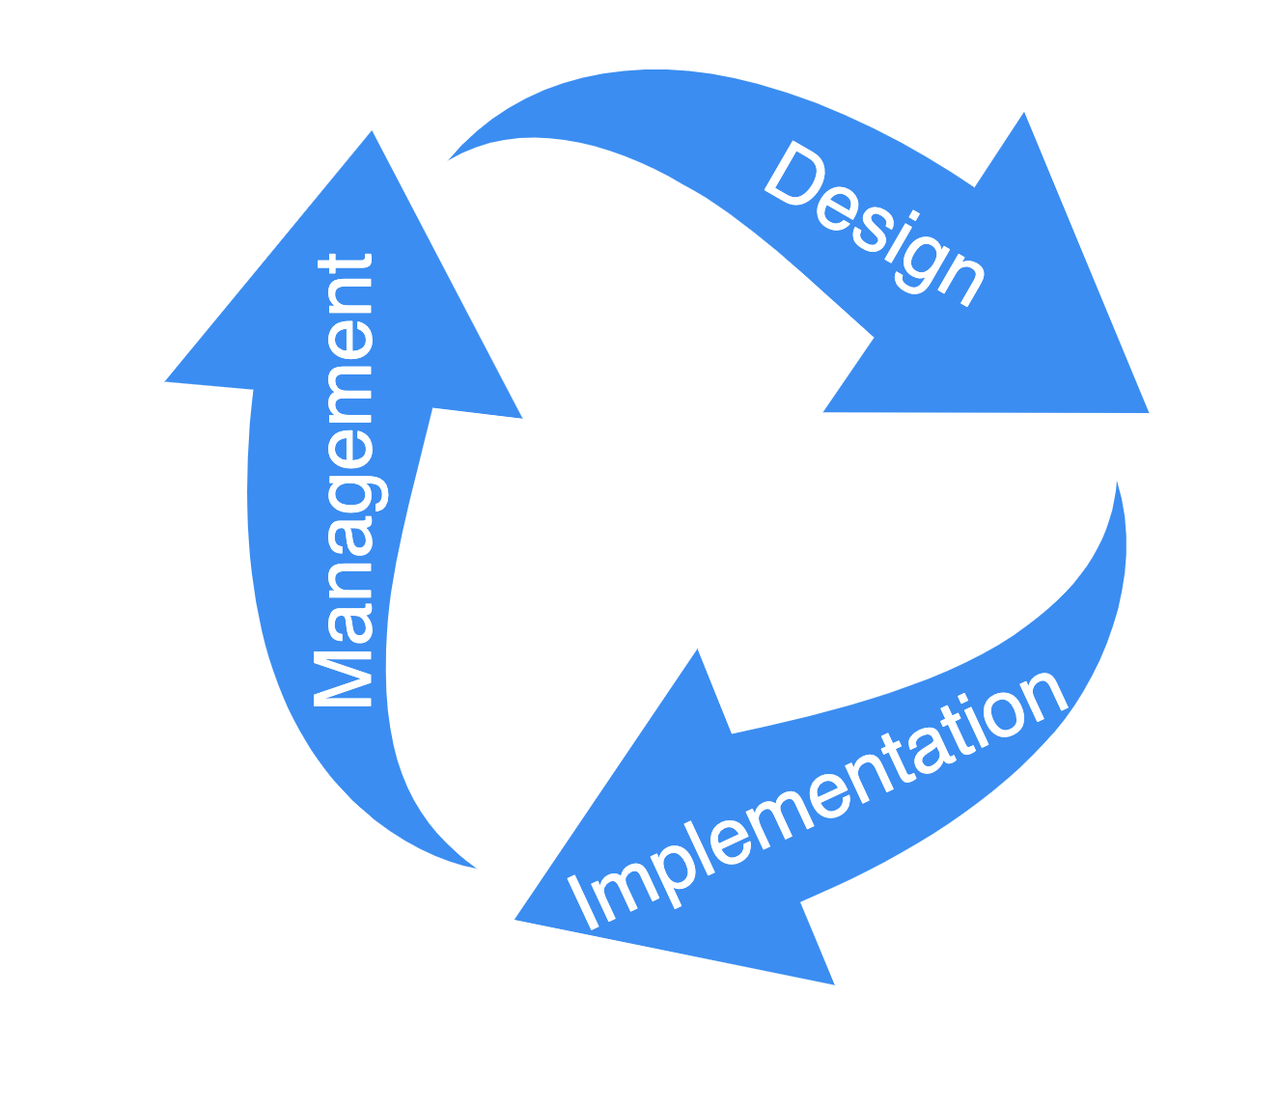 API Full Lifecycle Management